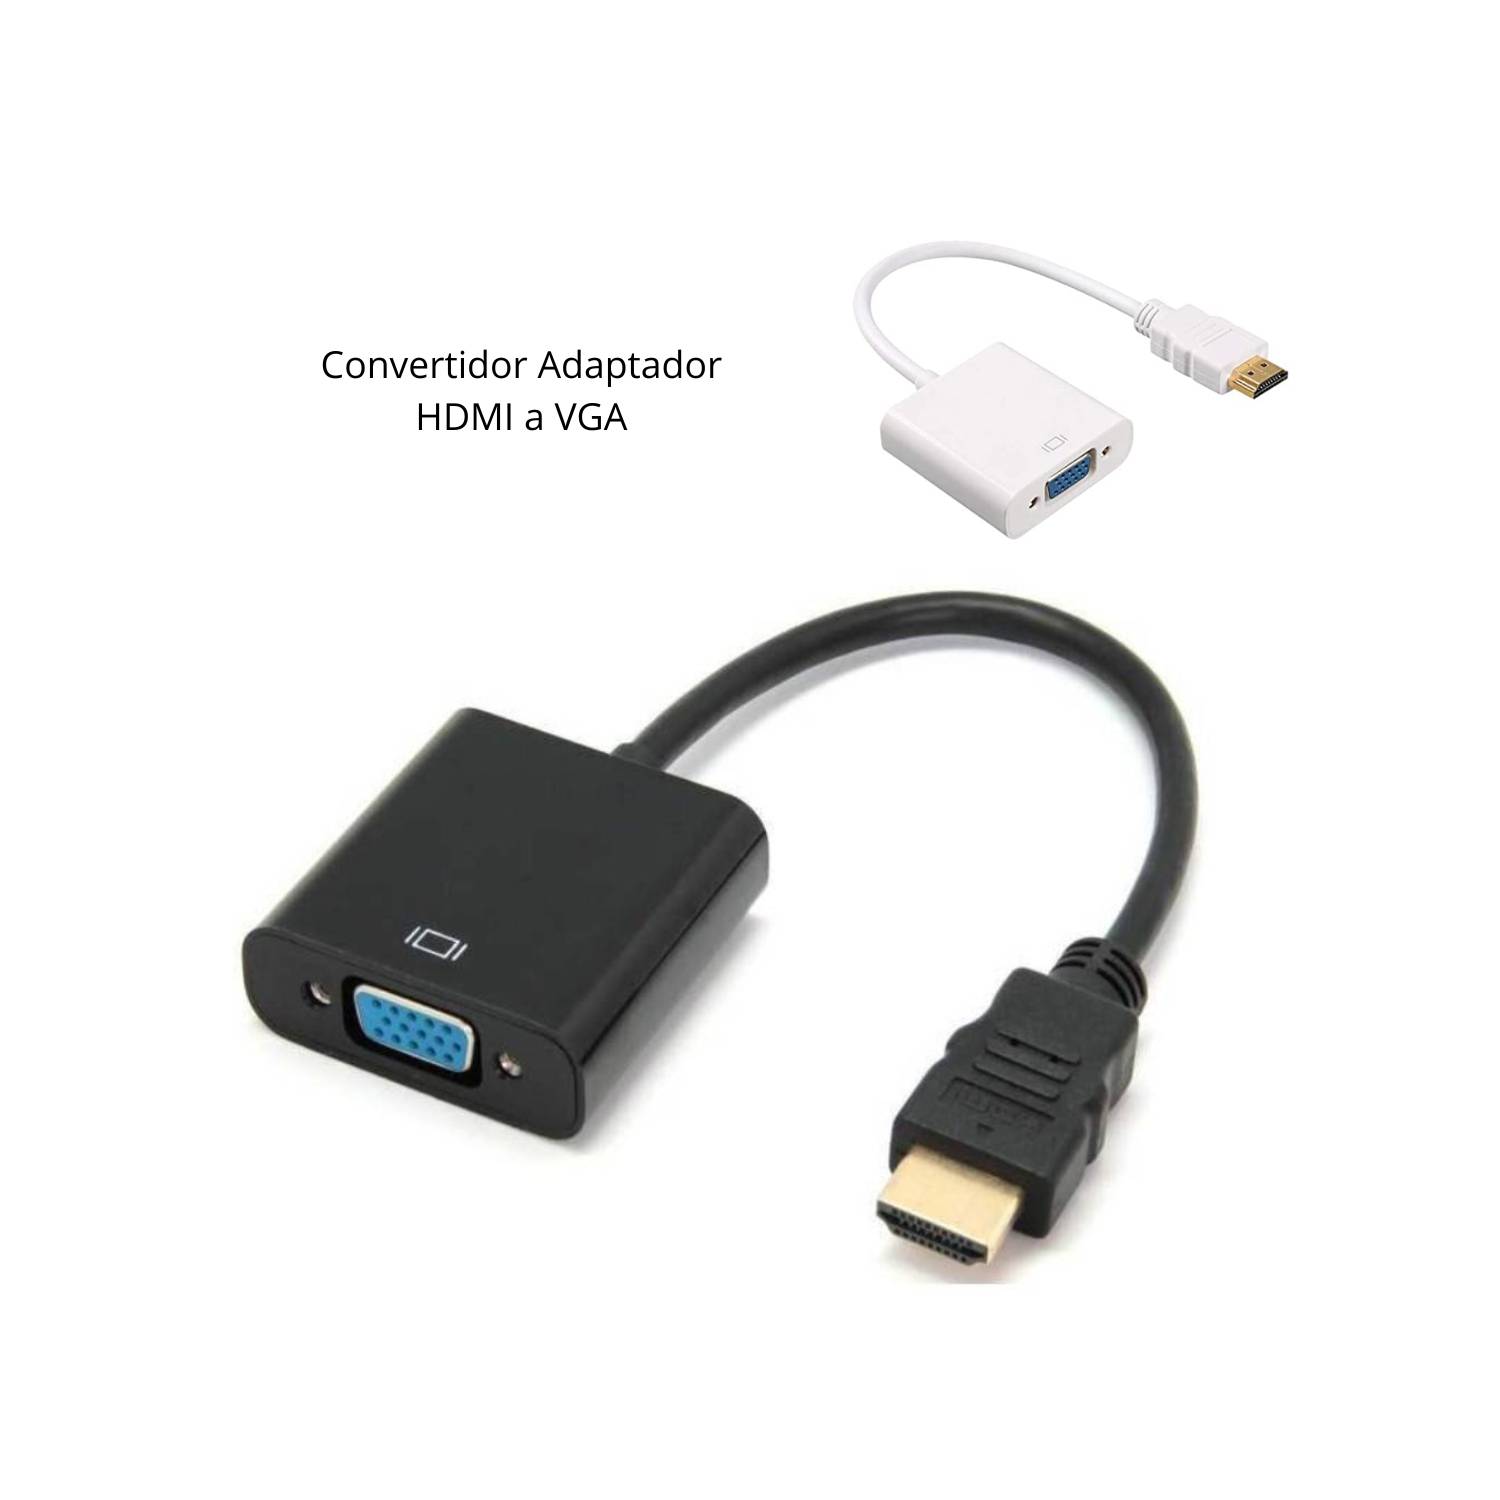 Convertidor Adaptador HDMI a VGA INSPIRA